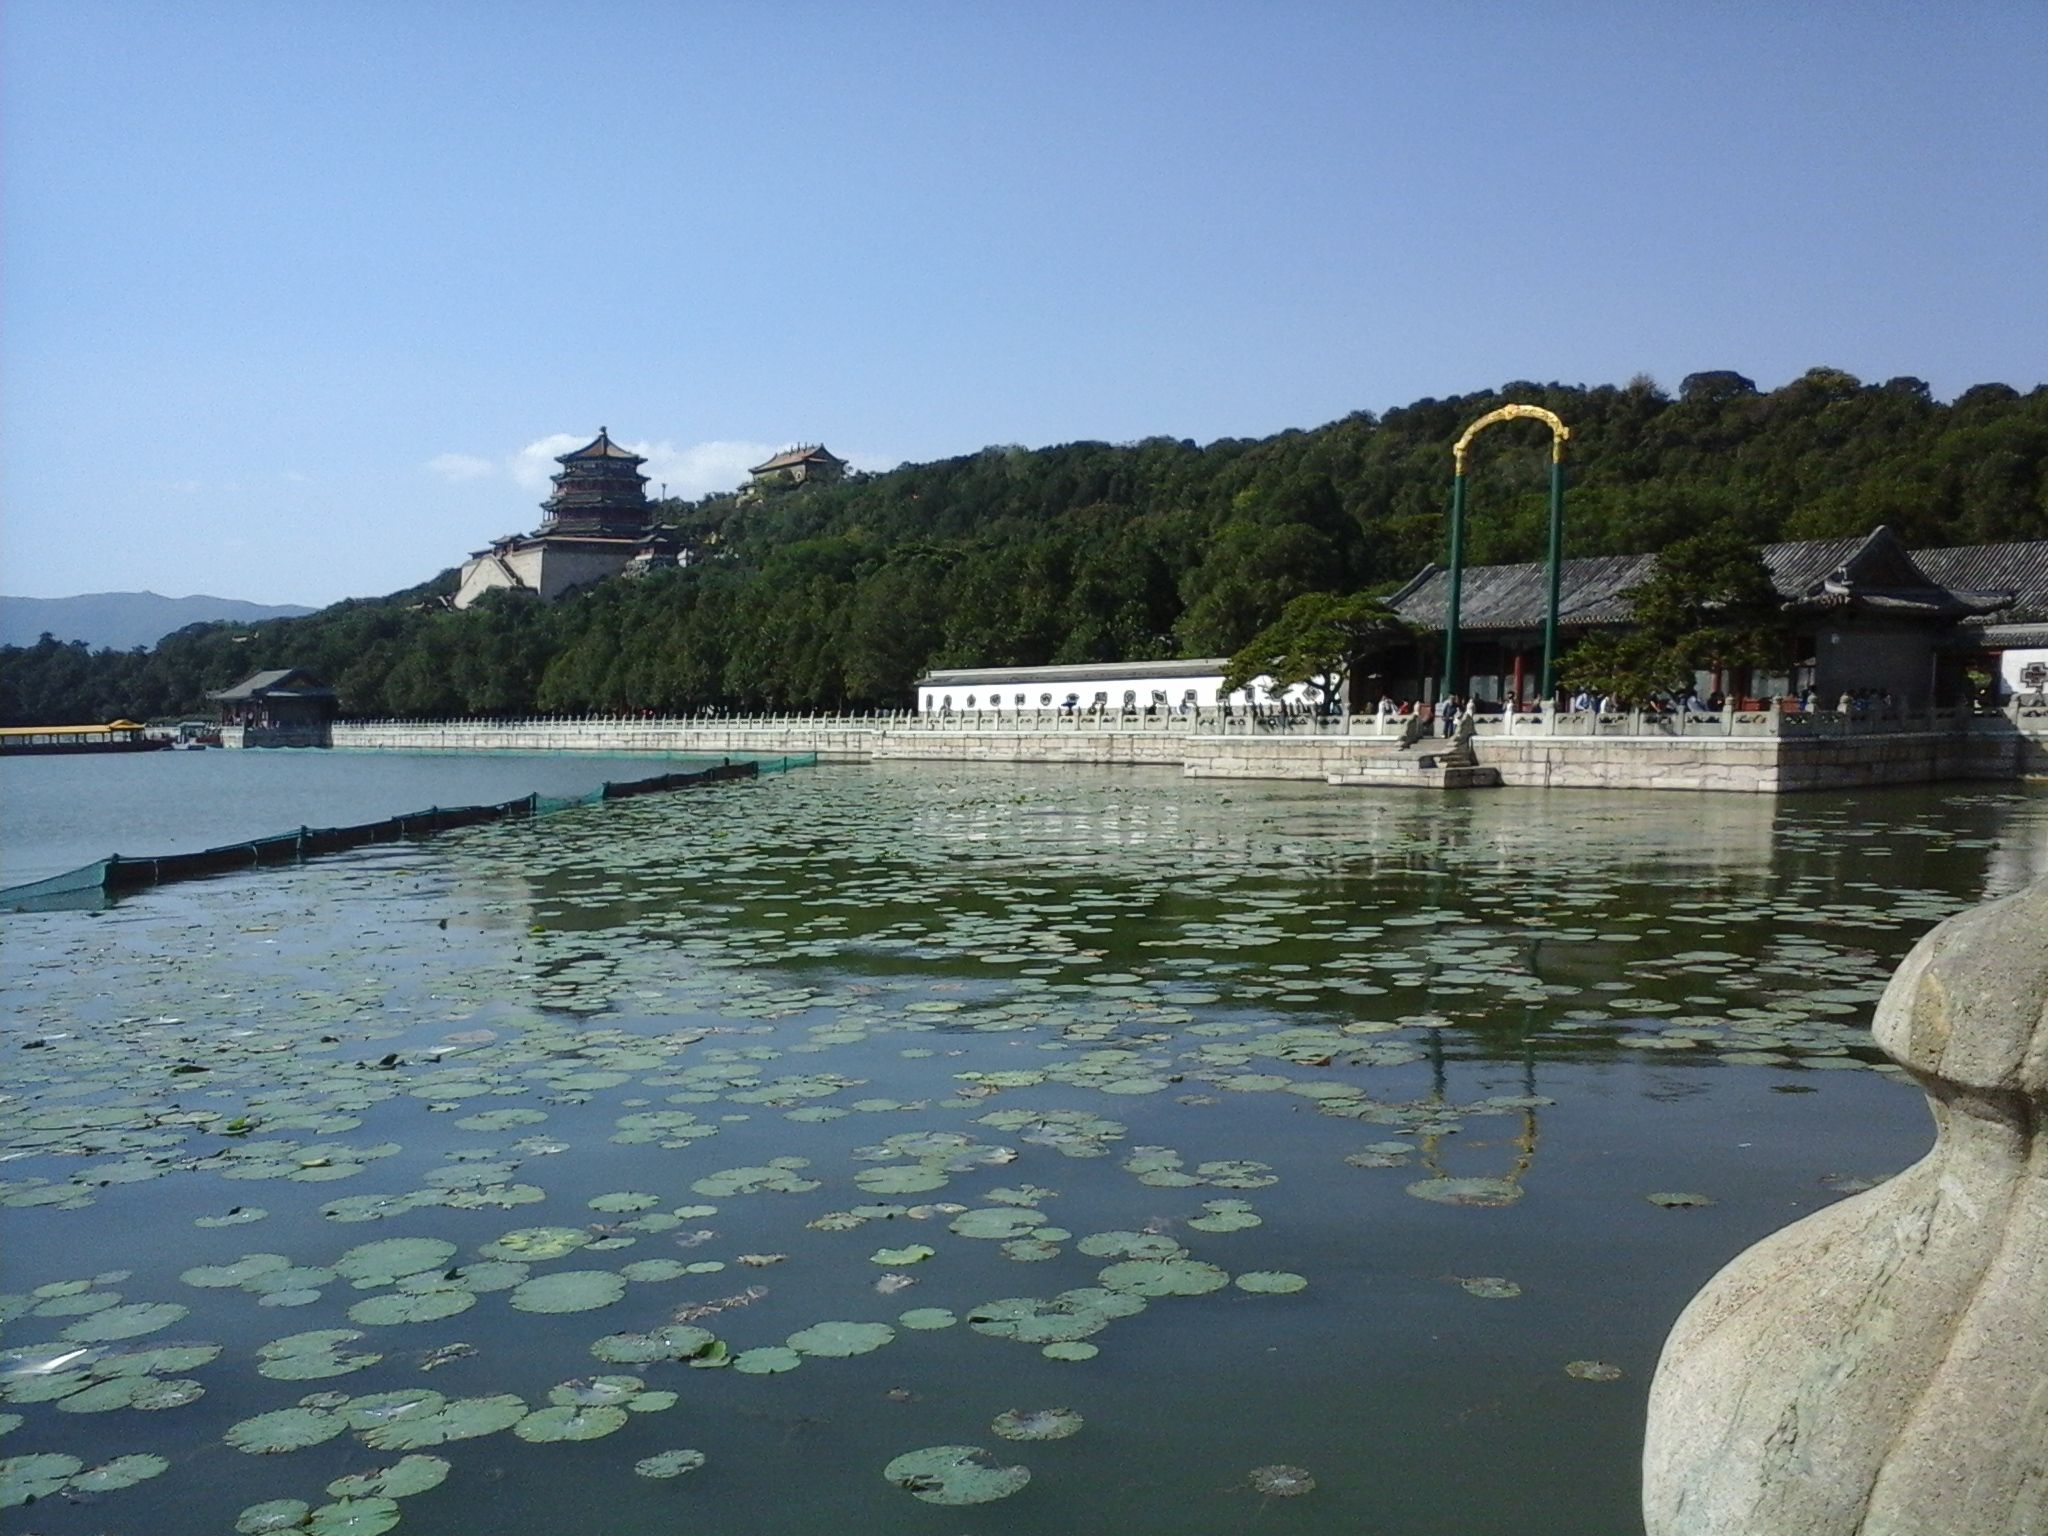 描述：一张颐和园的照片，前景是荷花湖，背景是主庙。(本地向导 @TsekoV)